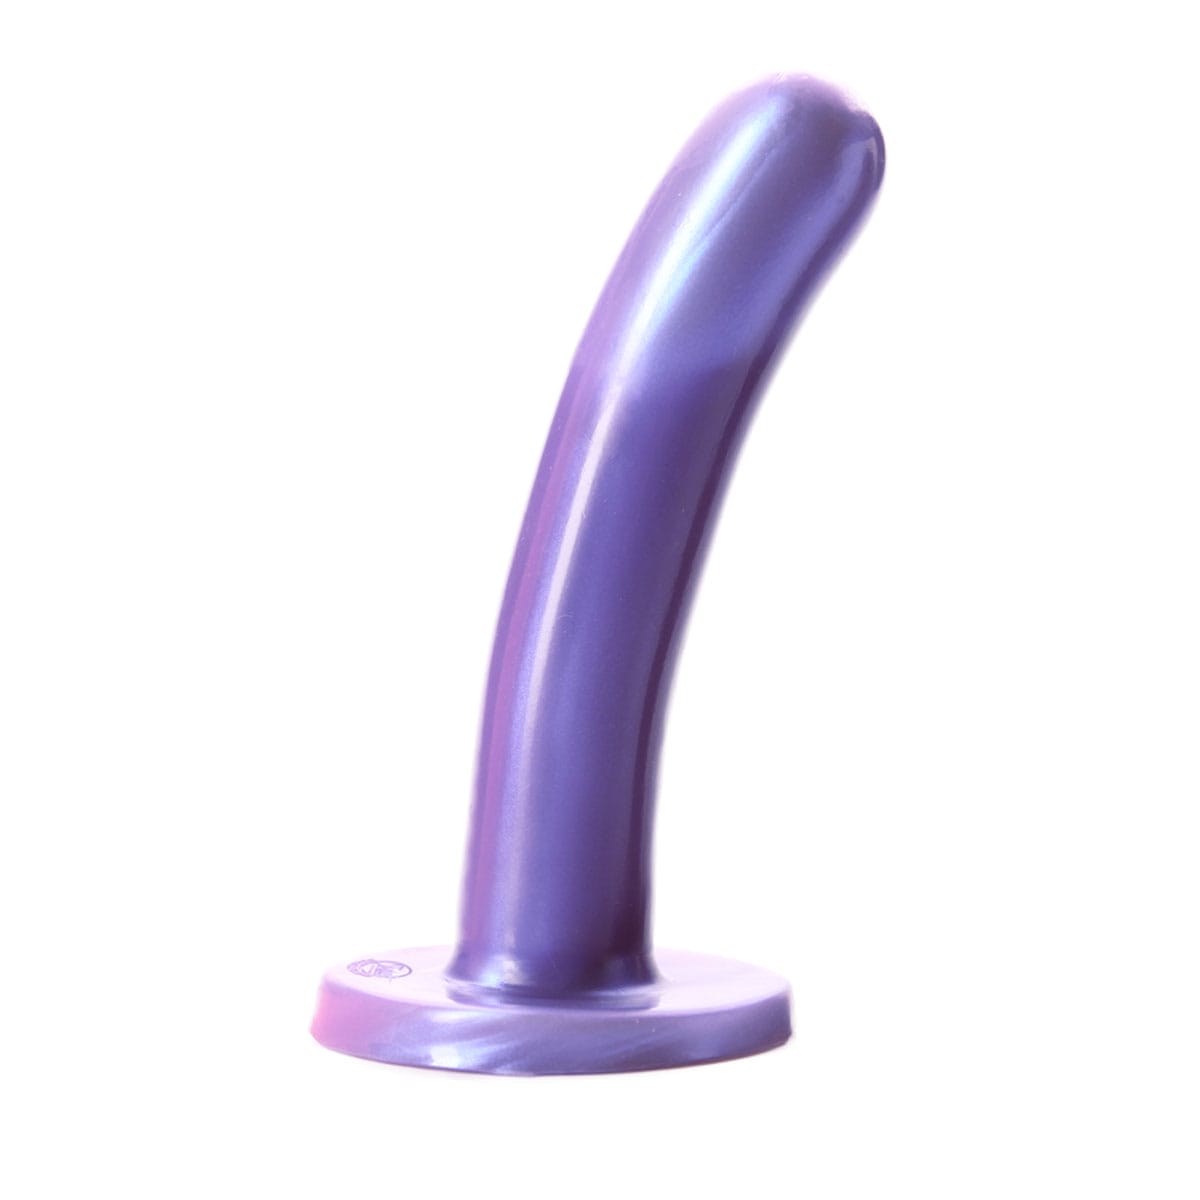 Buy Tantus Silk Medium   Purple Haze 5.25 long and 1.1 thick dildo made by Tantus.